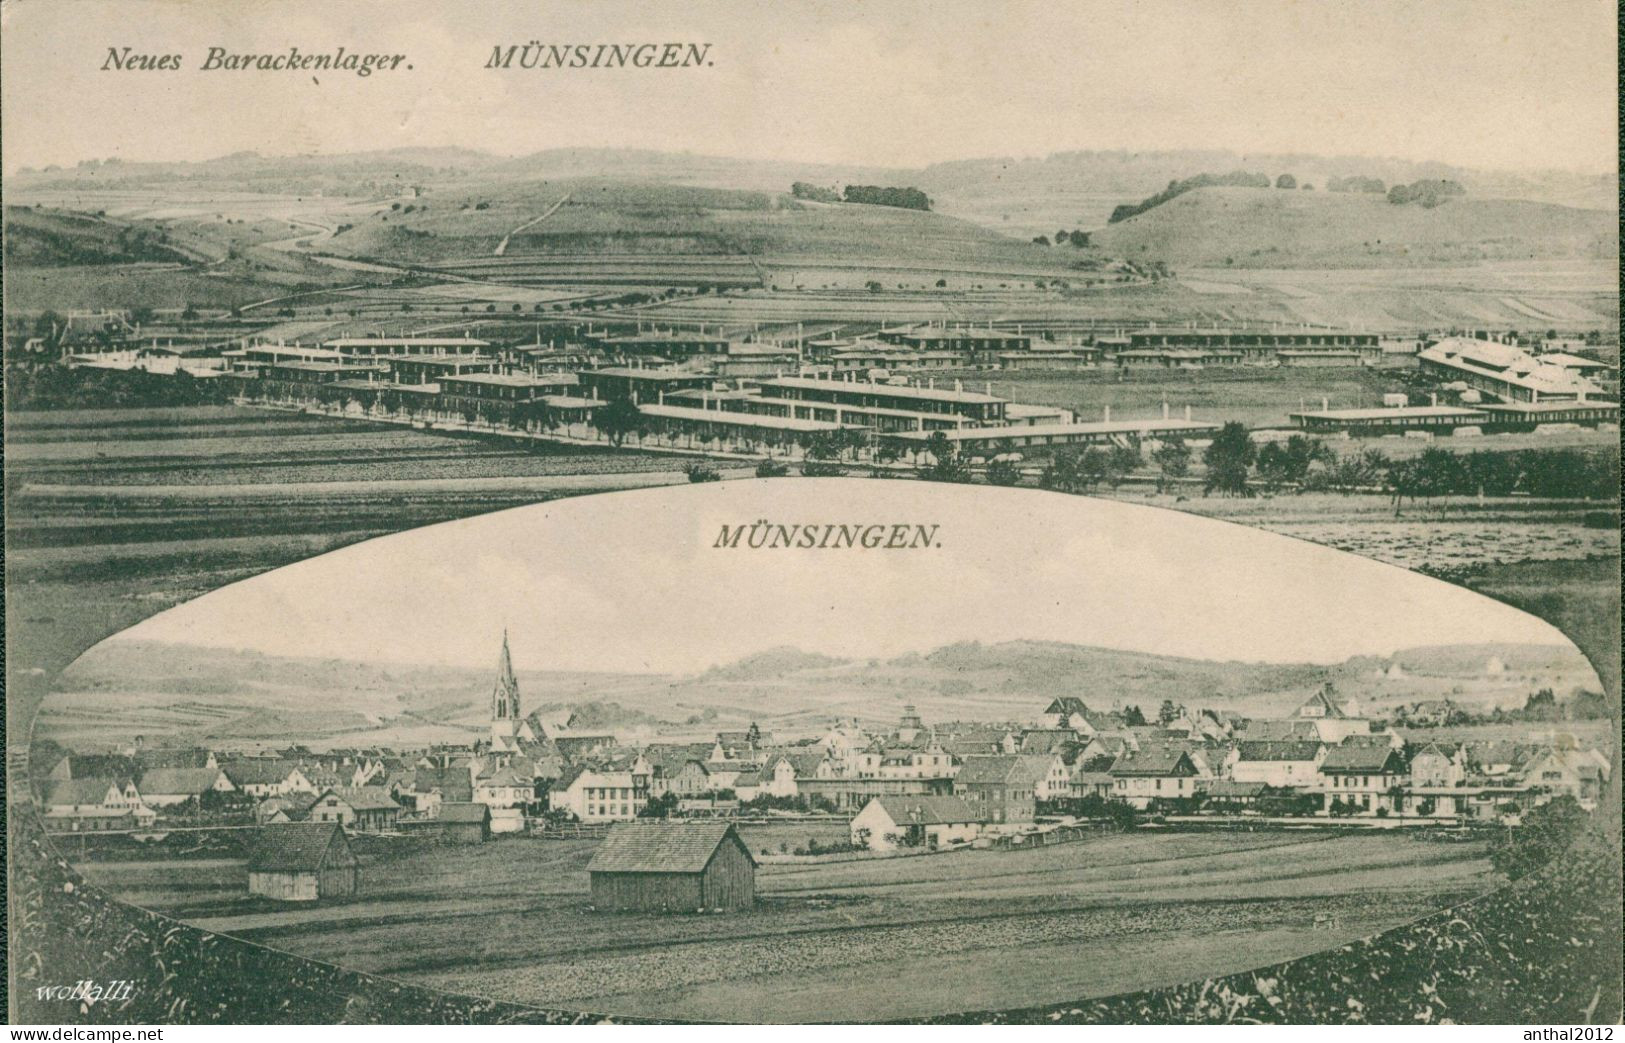 Superrar Litho MB Karte Münsingen Mit Neuem Barackenlager 30.4.1917 H. Sting Tübingen 53178 - Muensingen